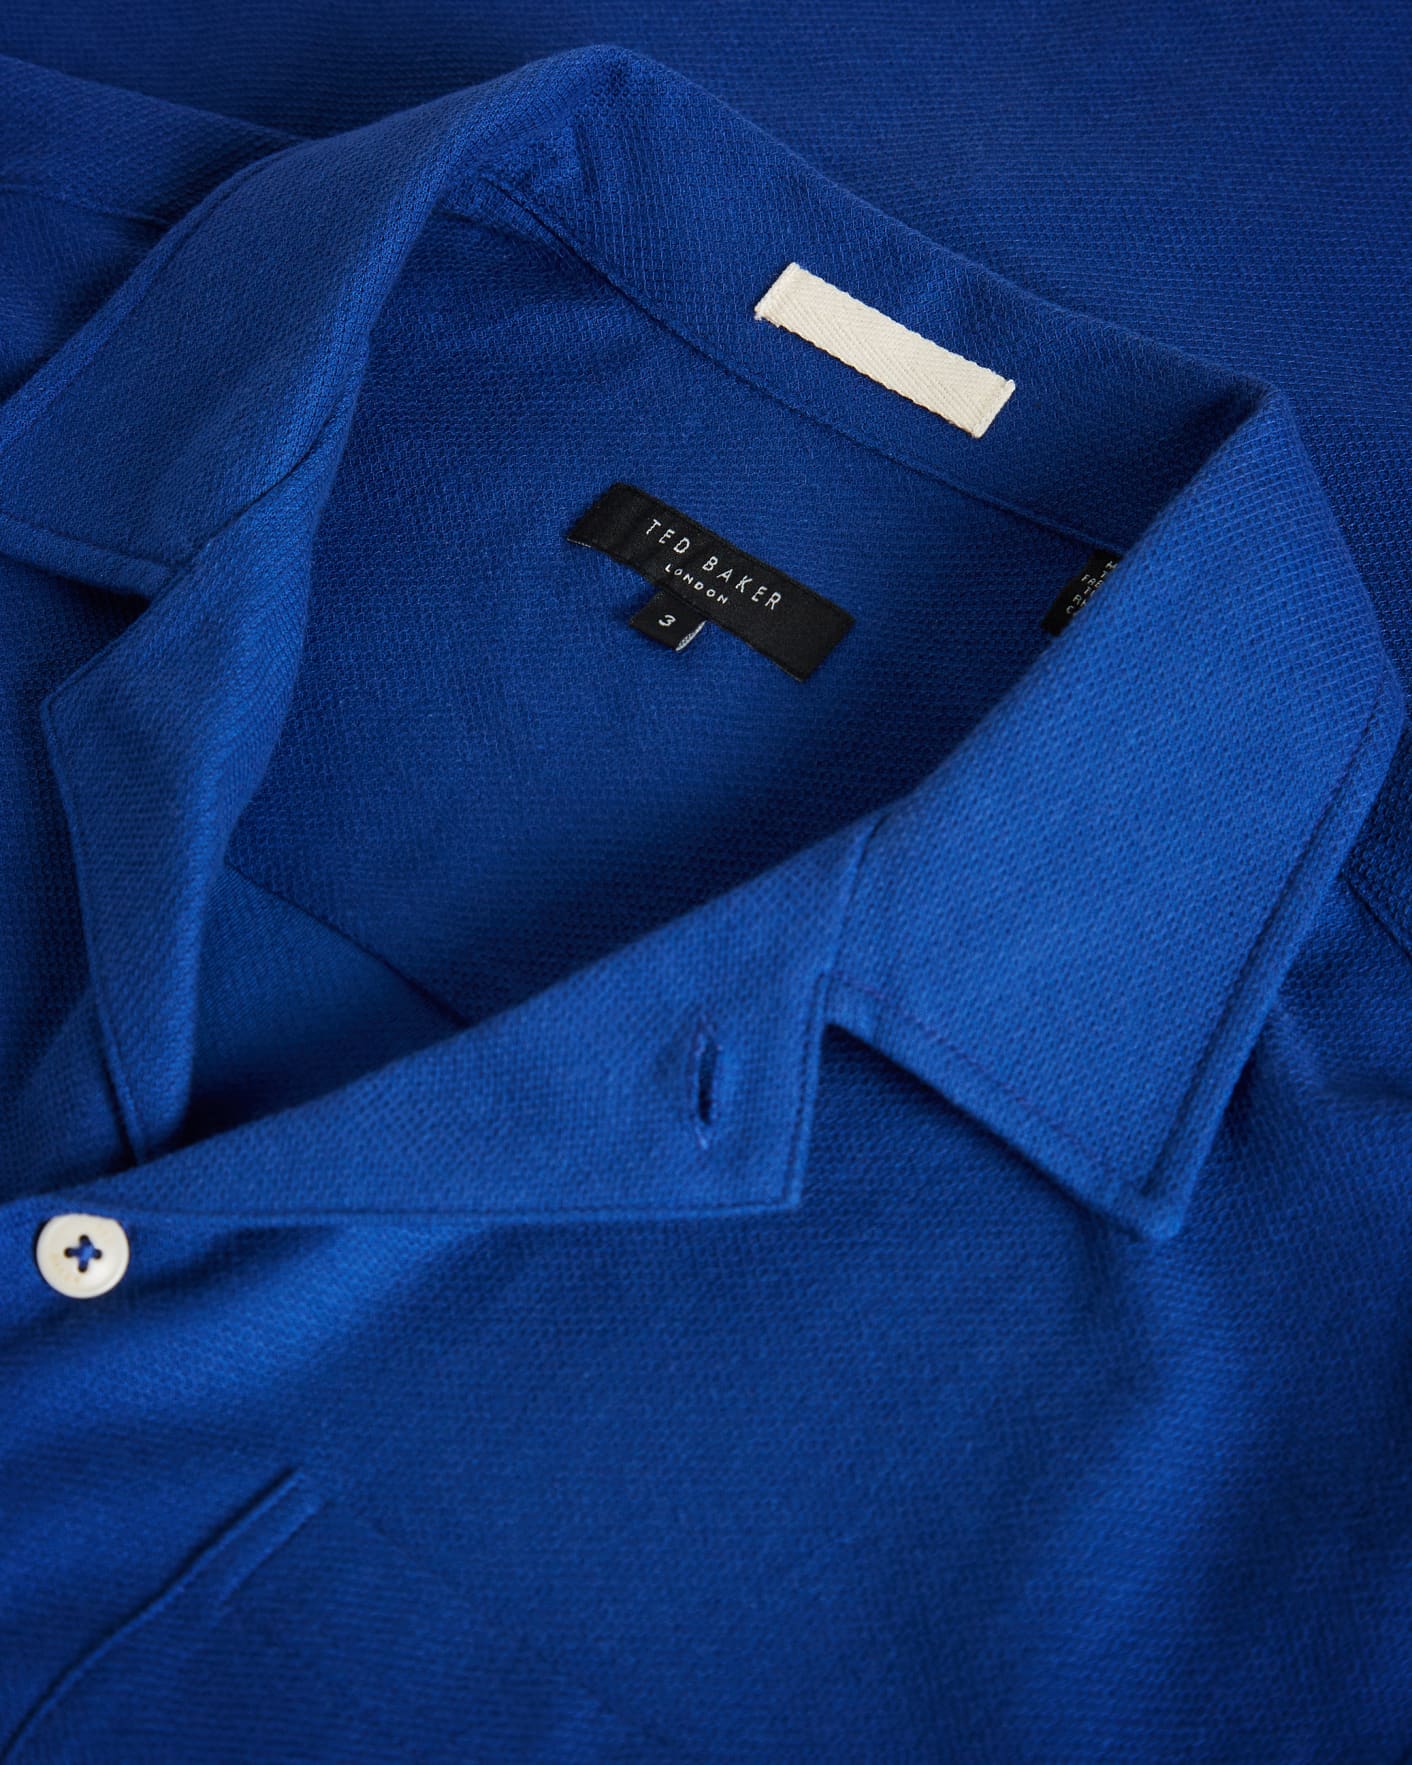 Bright Blue Short Sleeve Jersey Pique Shirt Ted Baker